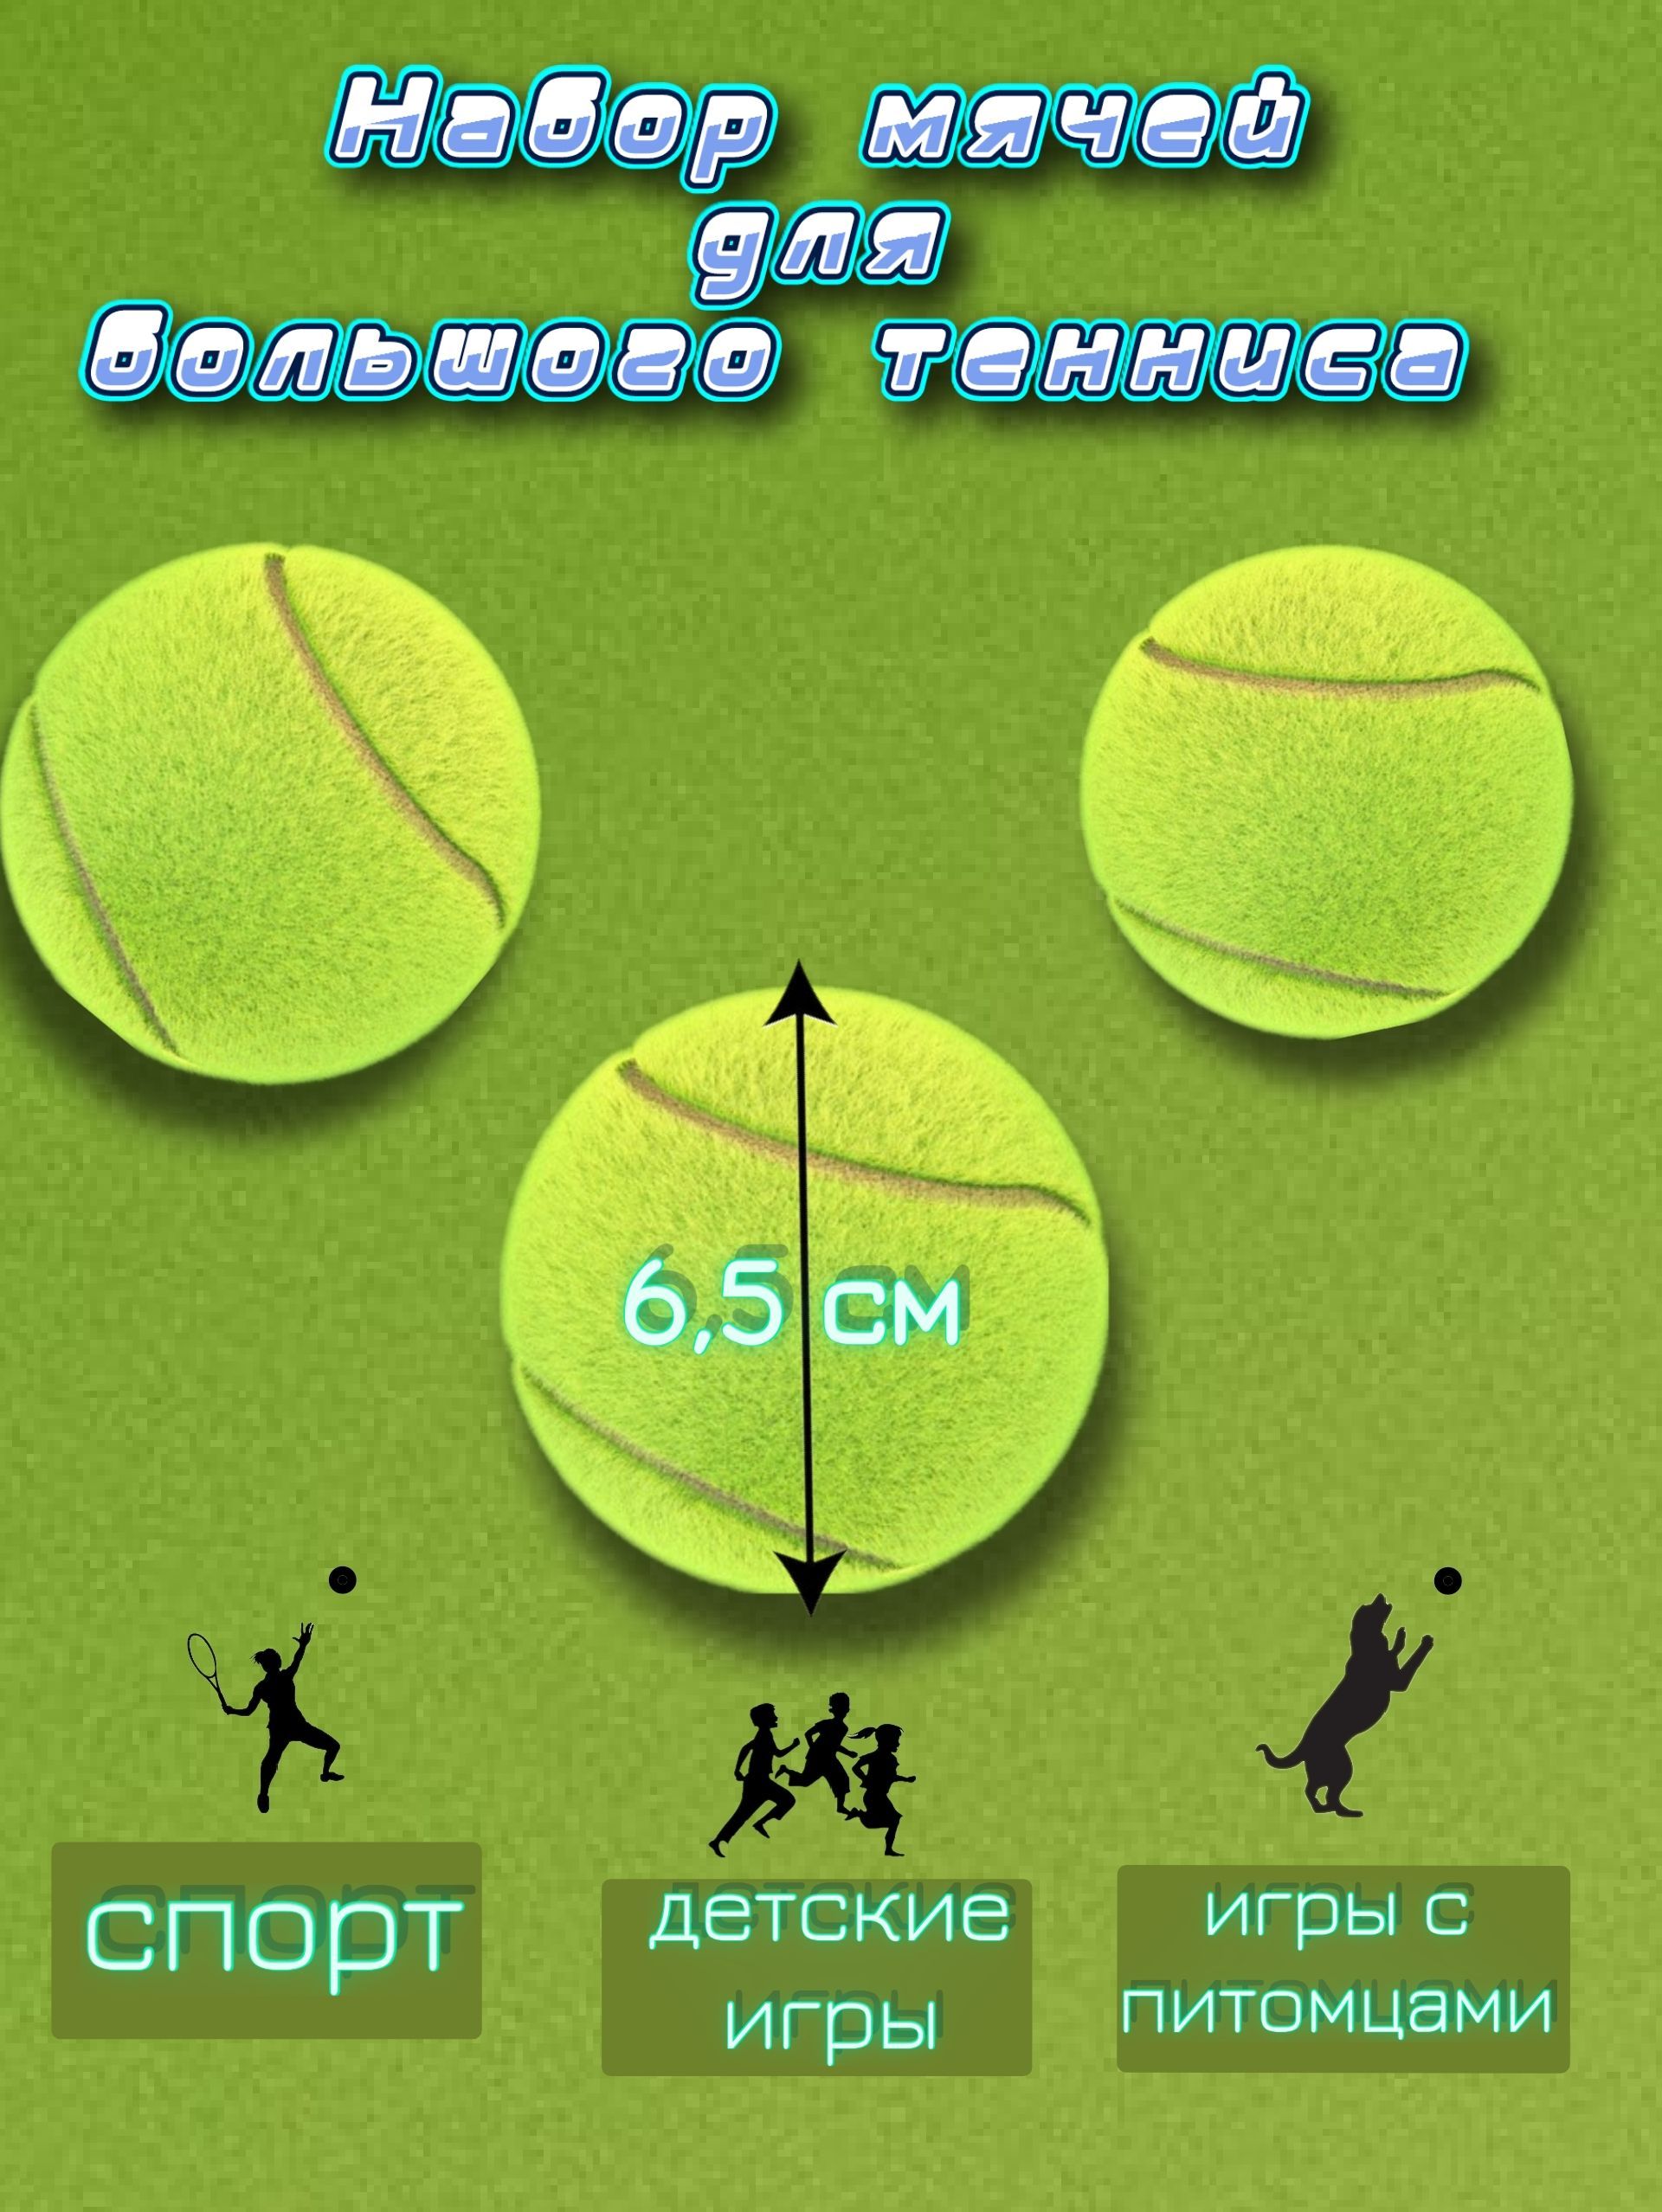 Представьте ядро размером с теннисный мячик диаметром. Диаметр теннисного мяча.